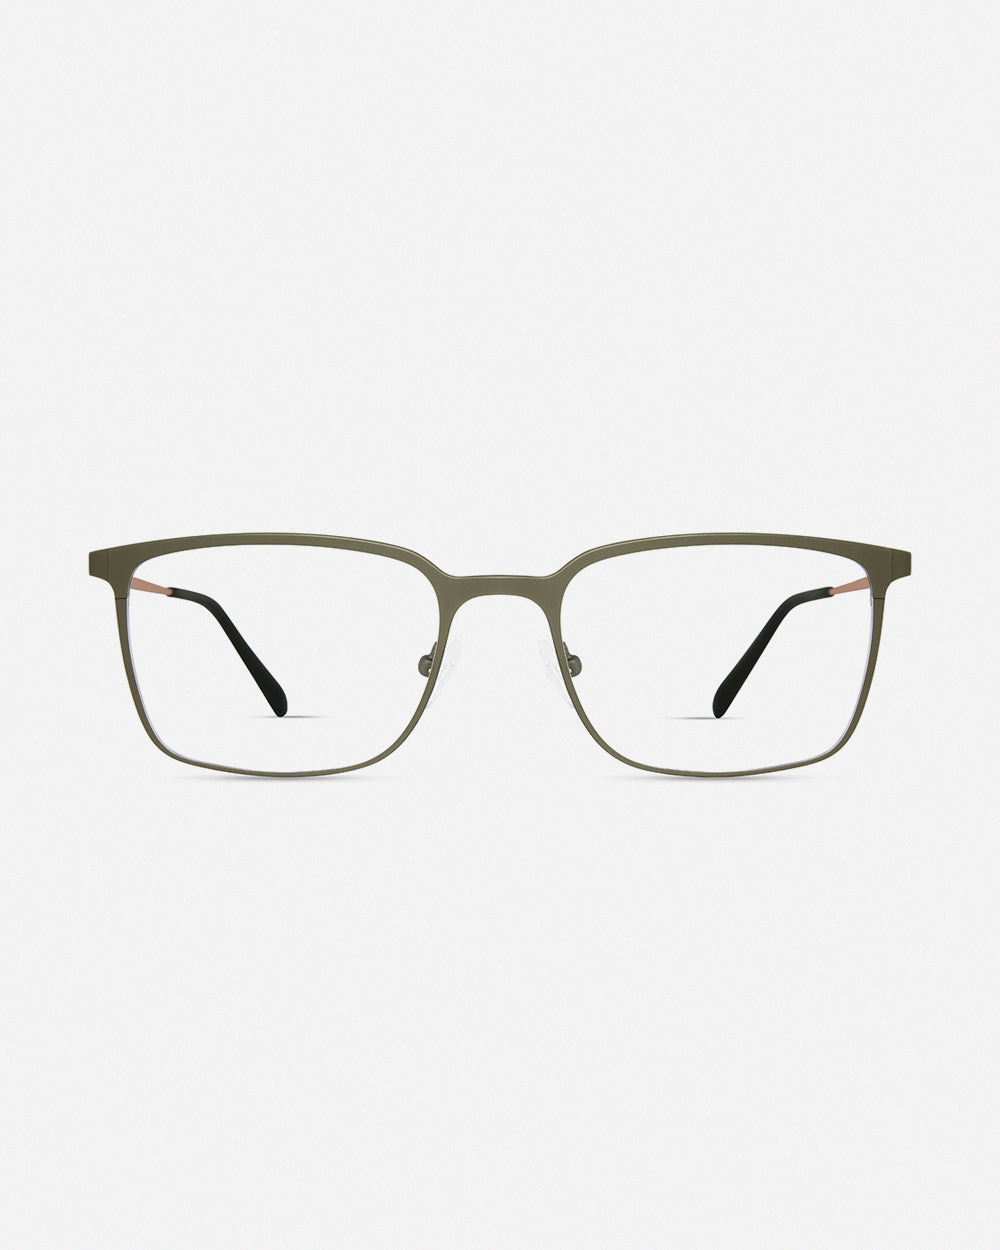 450 – MODO Eyewear